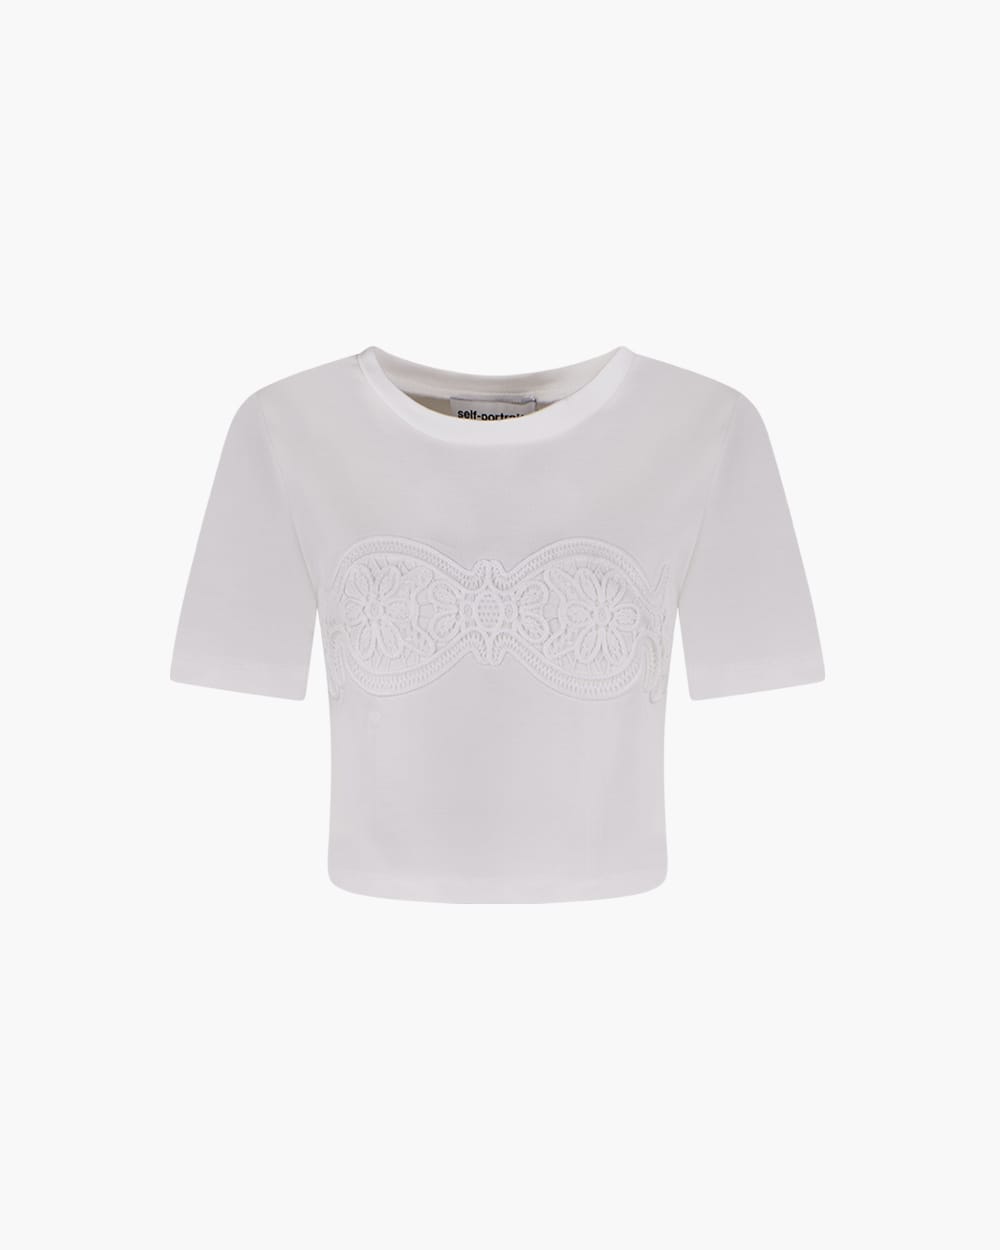 self-portrait Lace Applique T-shirt